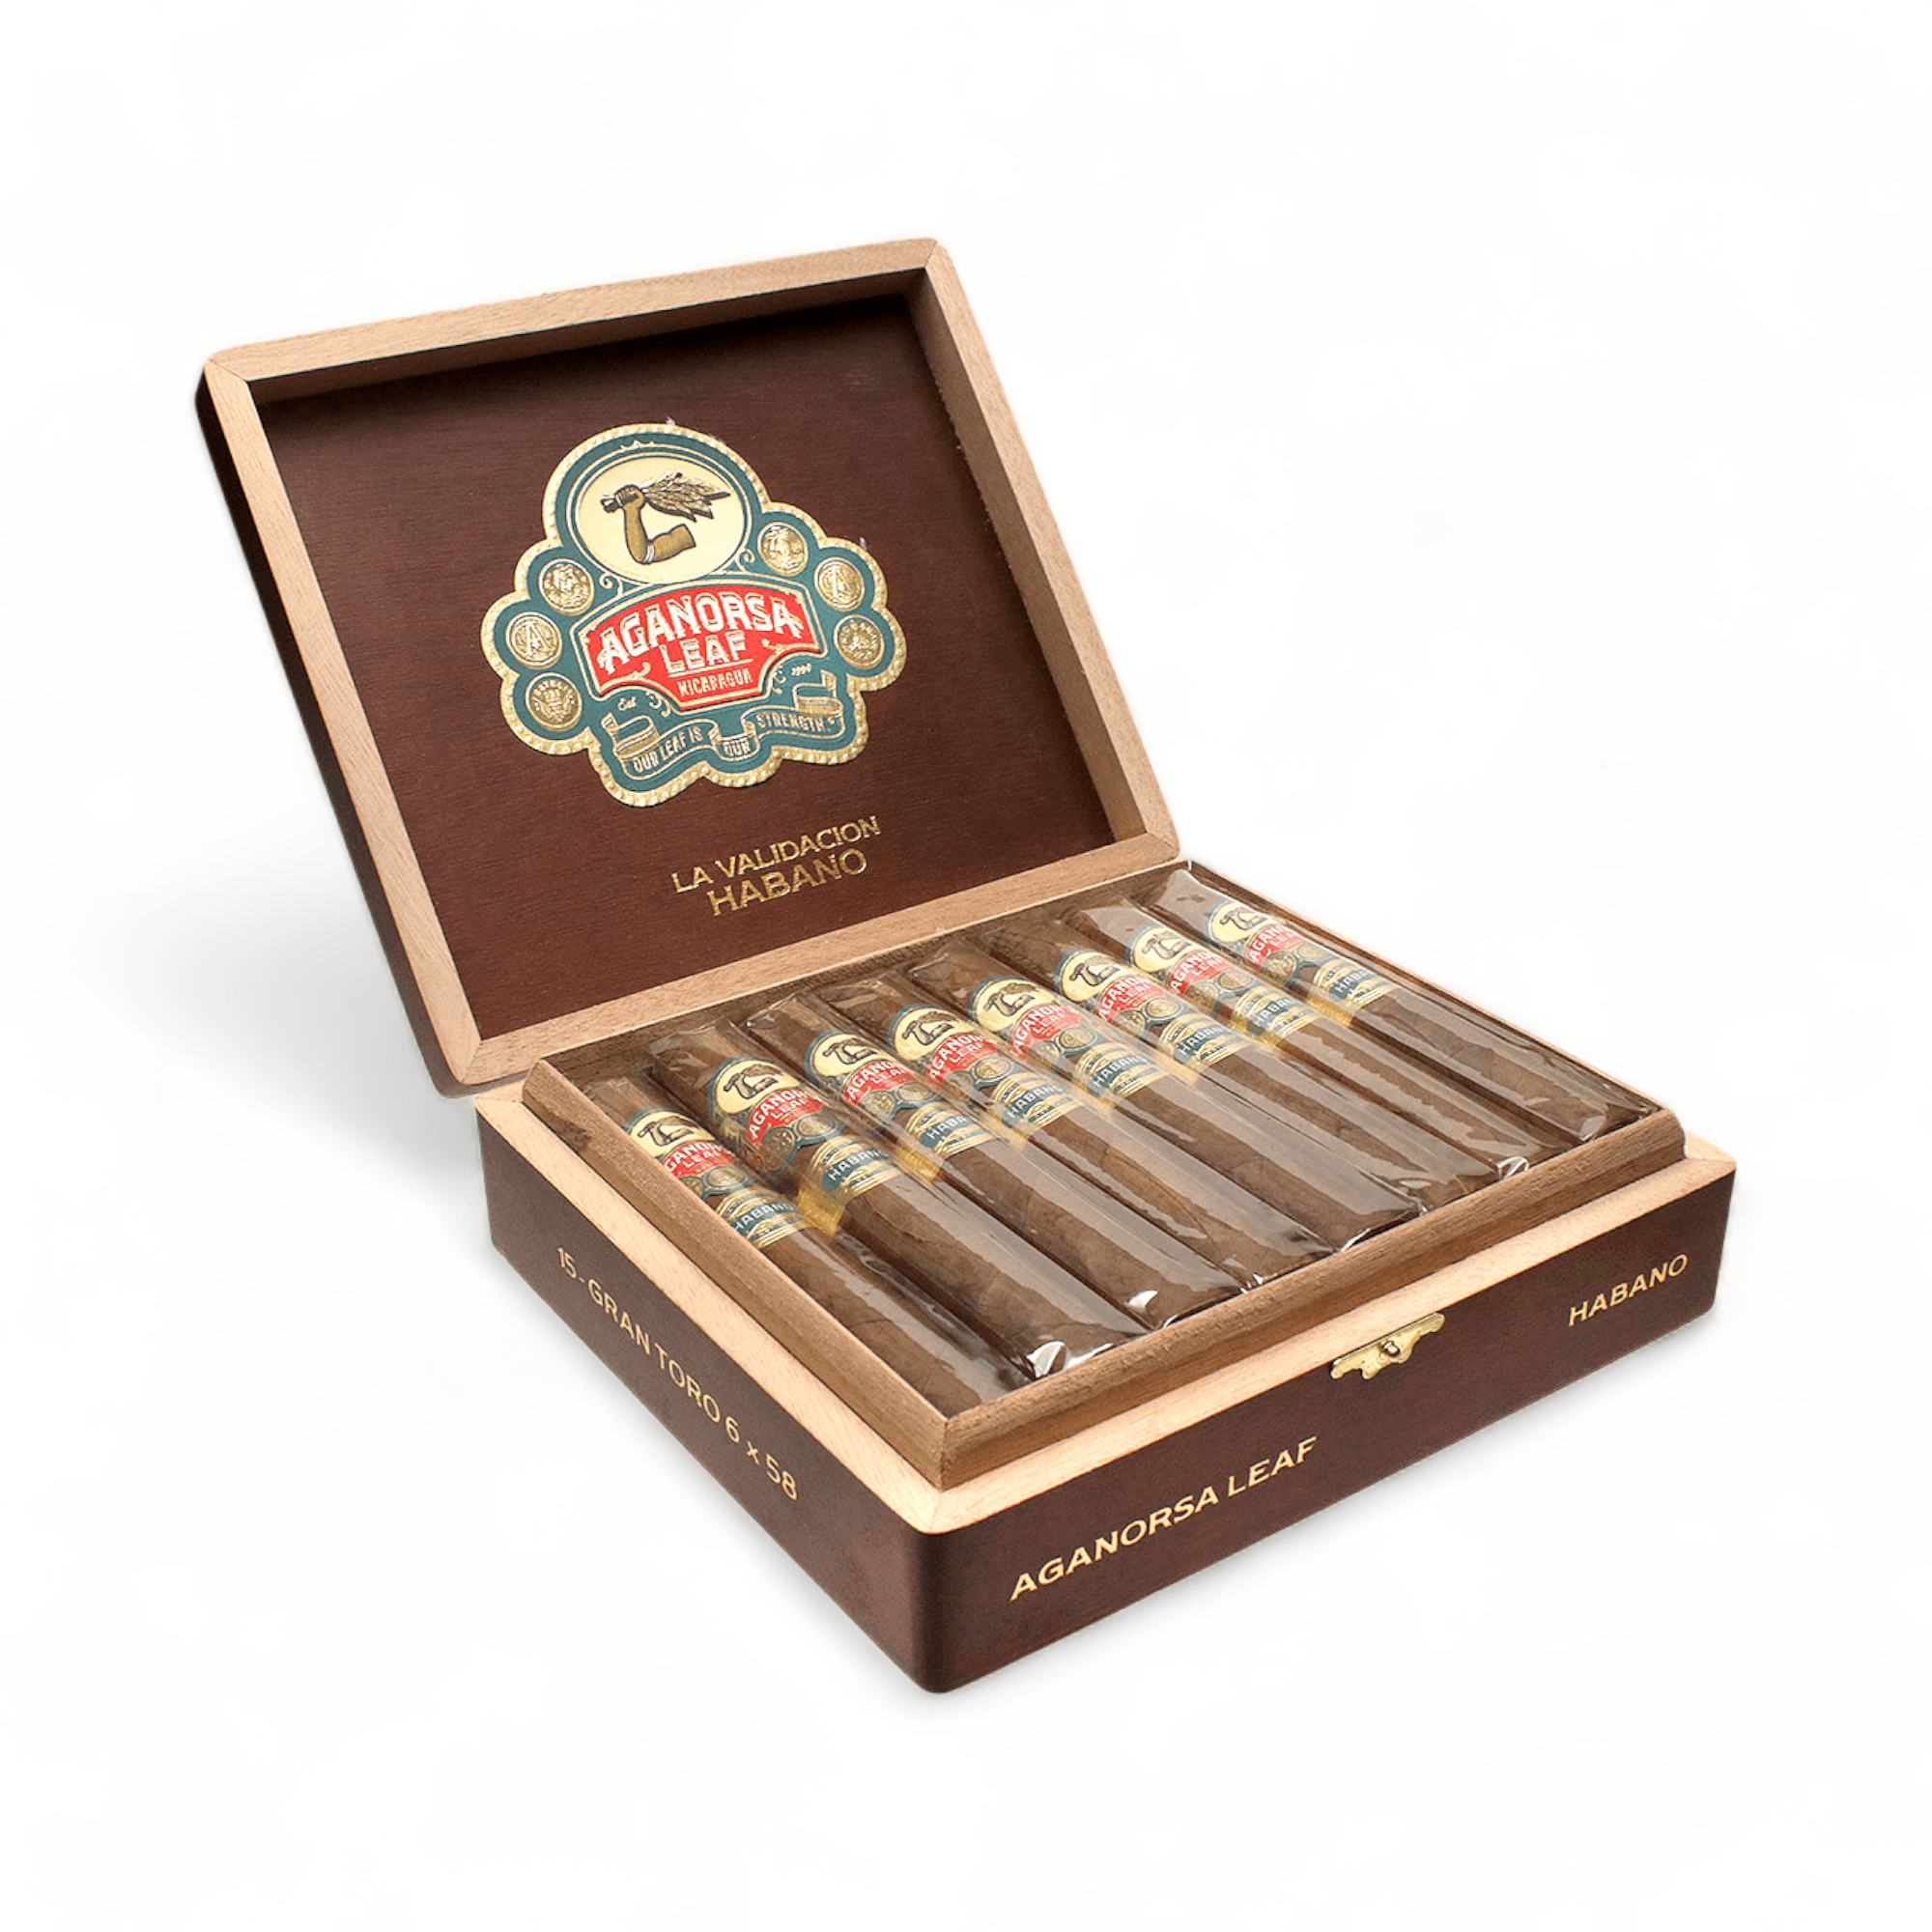 Aganorsa Cigars | La Validacion Habano Gran Toro 6x58 | Box of 15 - hk.cohcigars